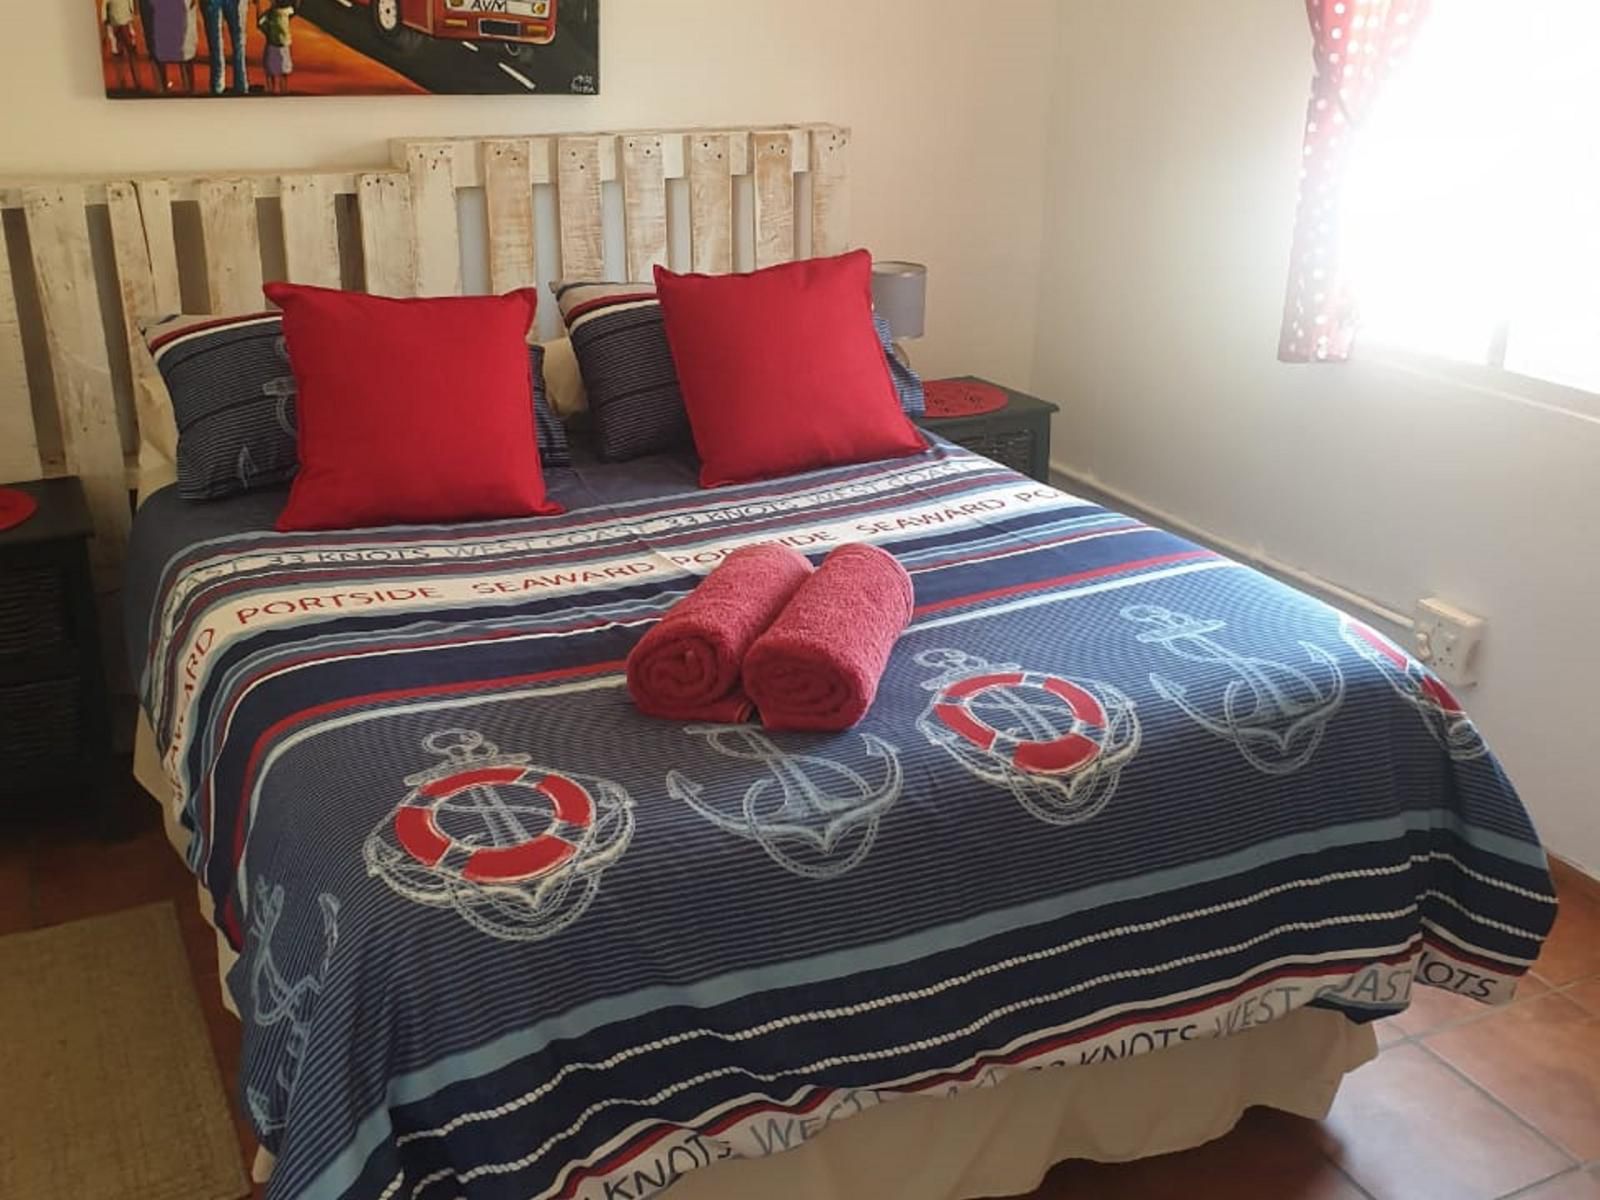 Honne Pondokkies Hondeklipbaai Northern Cape South Africa Bedroom